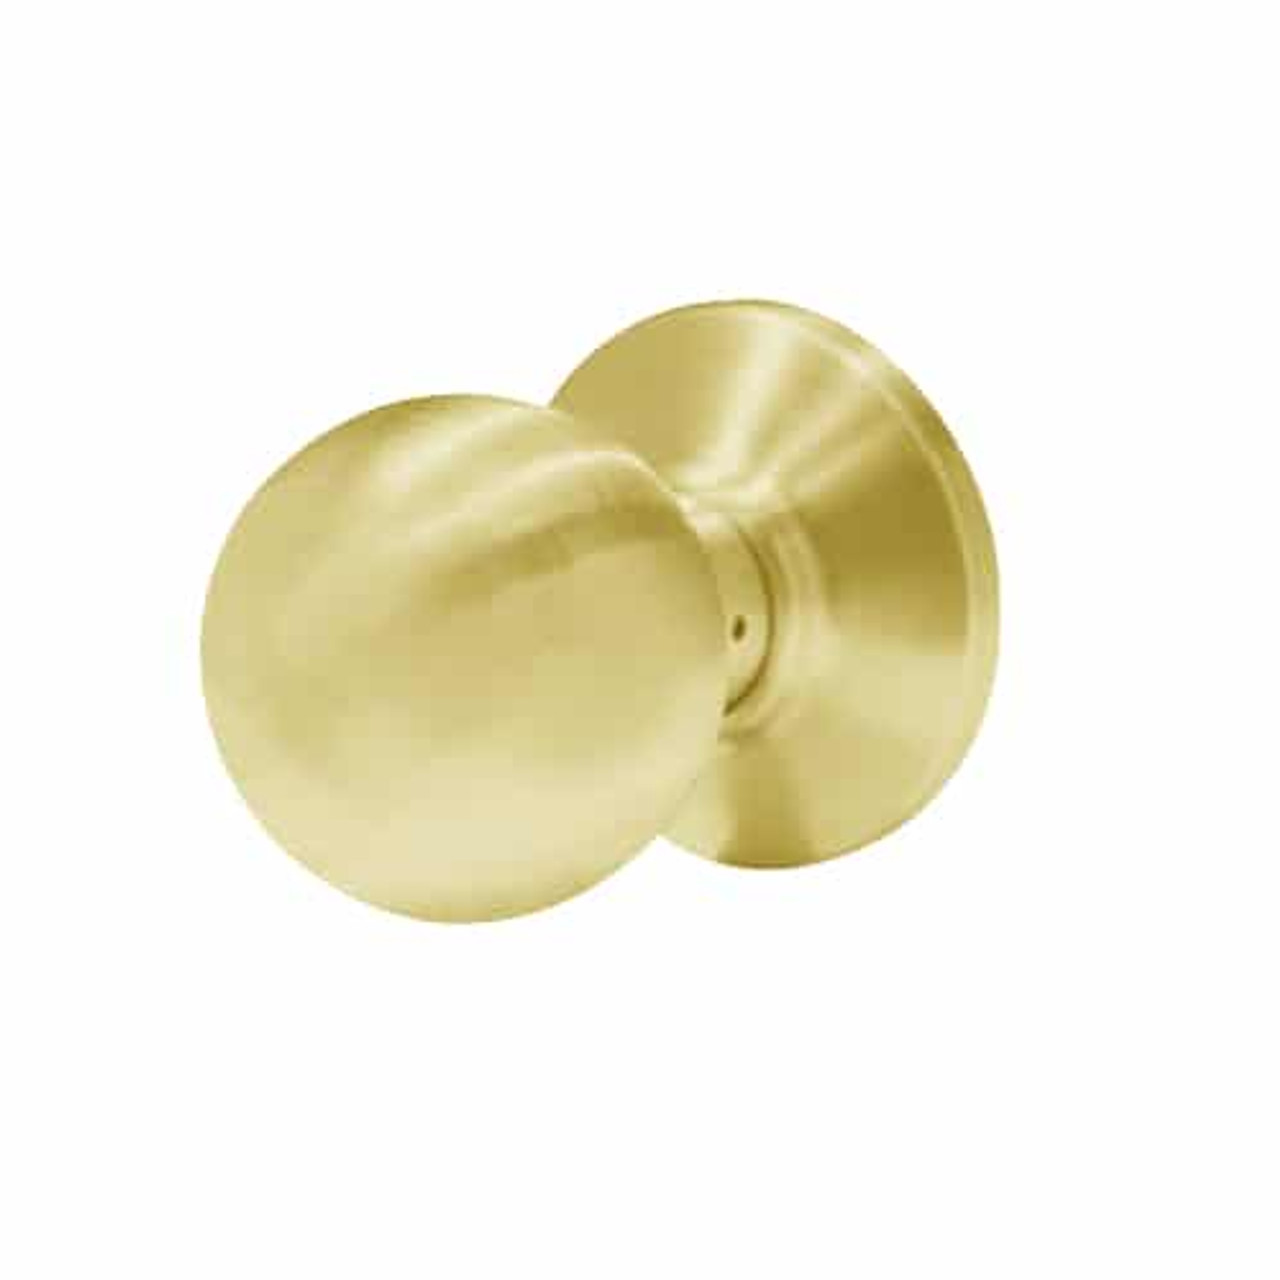 6K20N4CS3605 Best 6K Series Passage Medium Duty Cylindrical Knob Locks with Round Style in Bright Brass